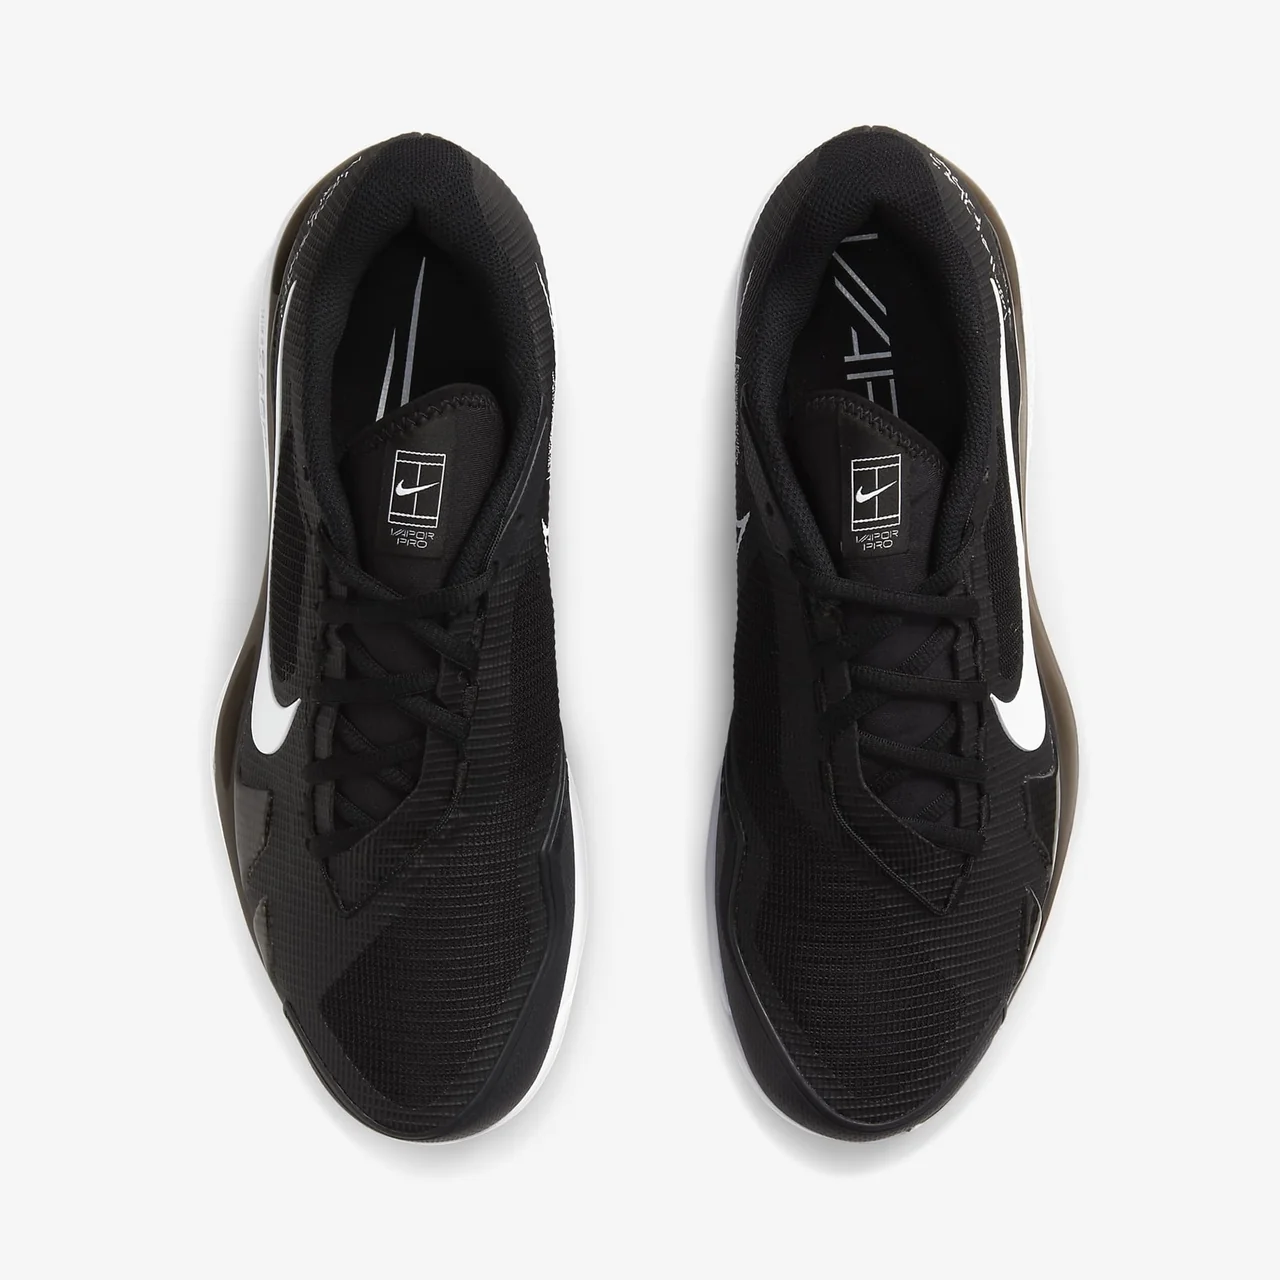 Nike Vapor Pro Black/White